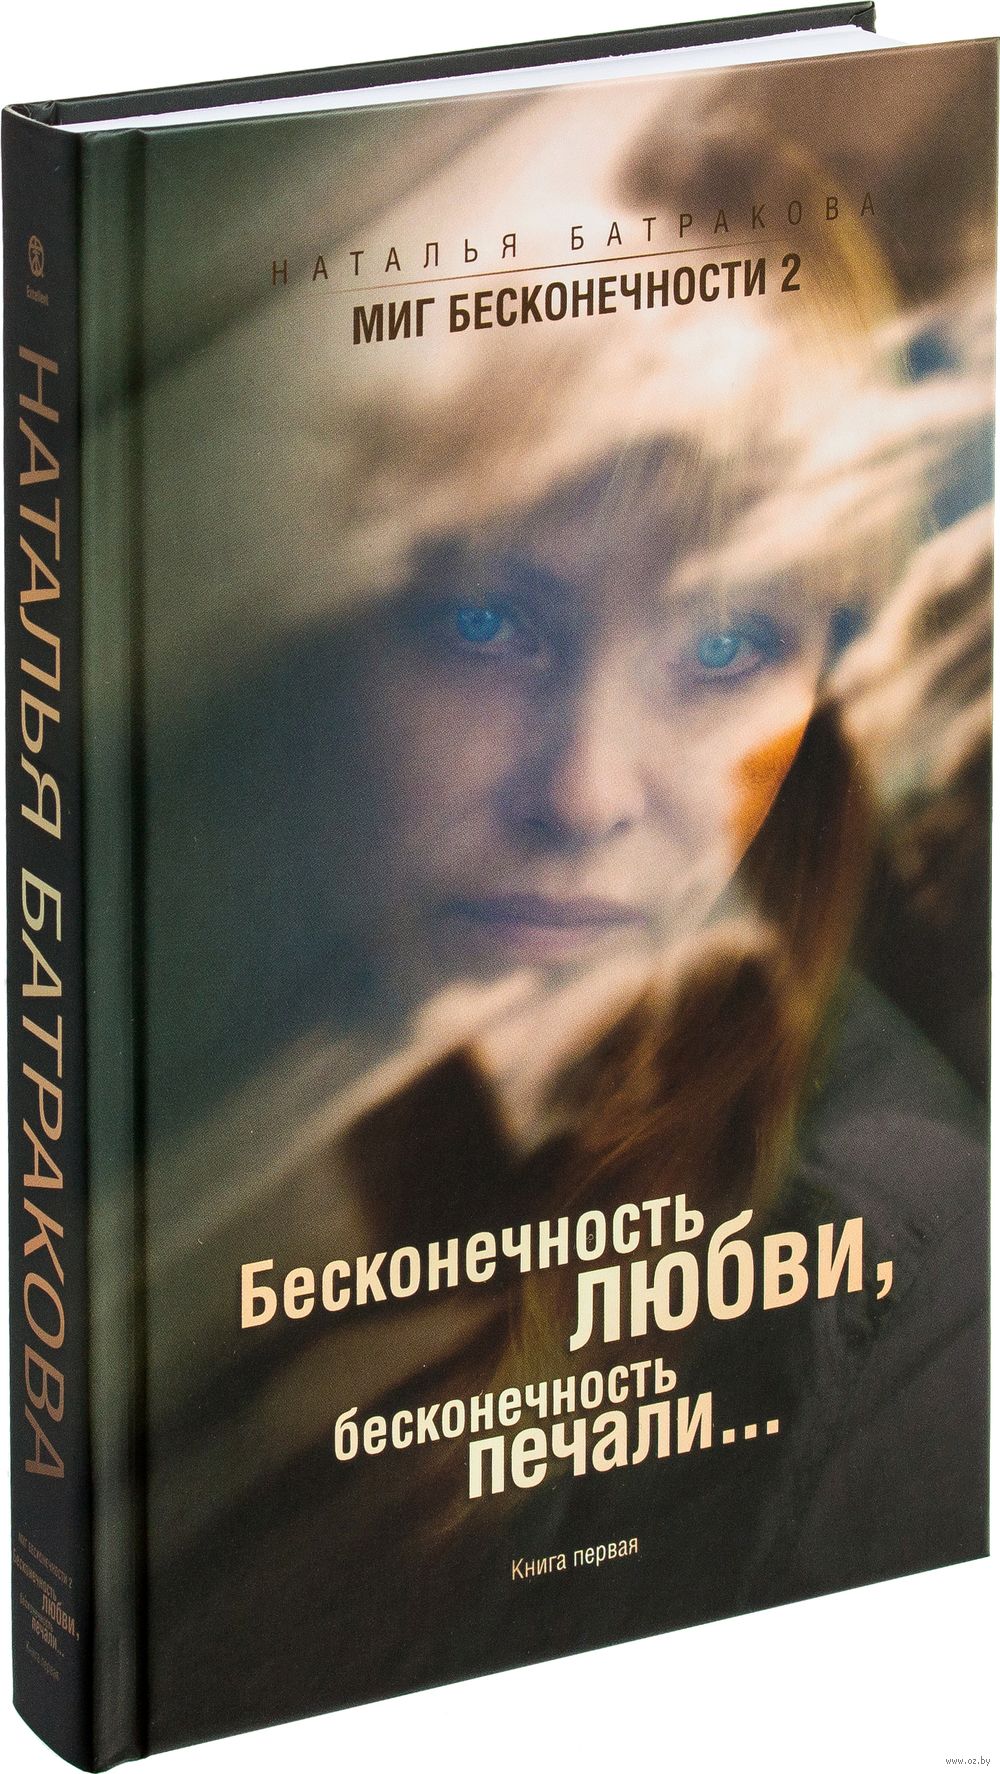 Наталья батракова все книги скачать бесплатно fb2